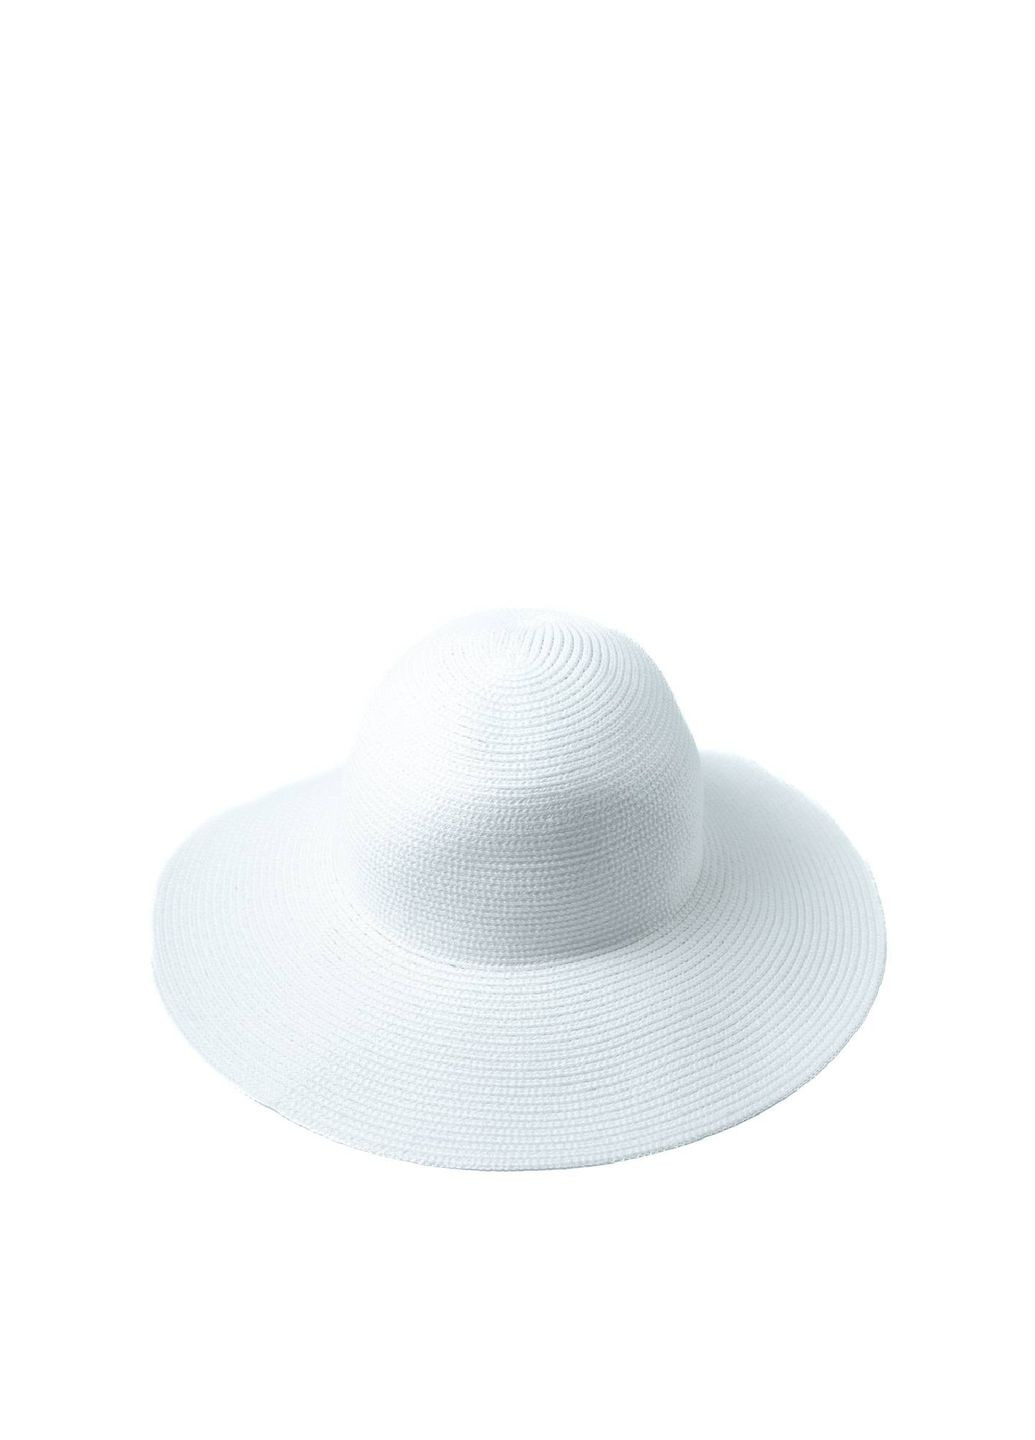 Шляпа слауч женская белая САНДИ LuckyLOOK 060-655 (292668885)